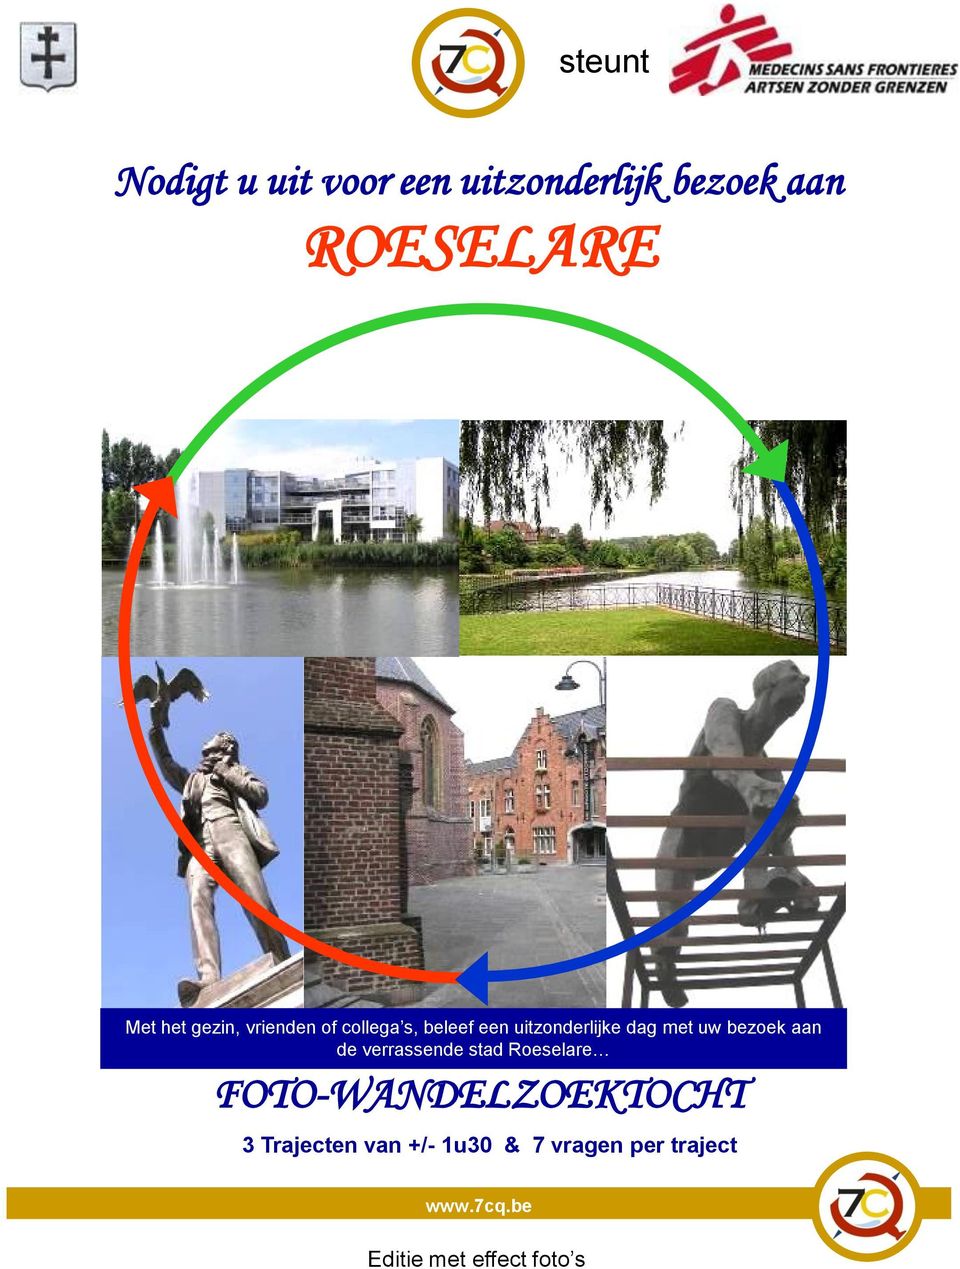 uw bezoek aan de verrassende stad Roeselare FOTO-WANDELZOEKTOCHT 3